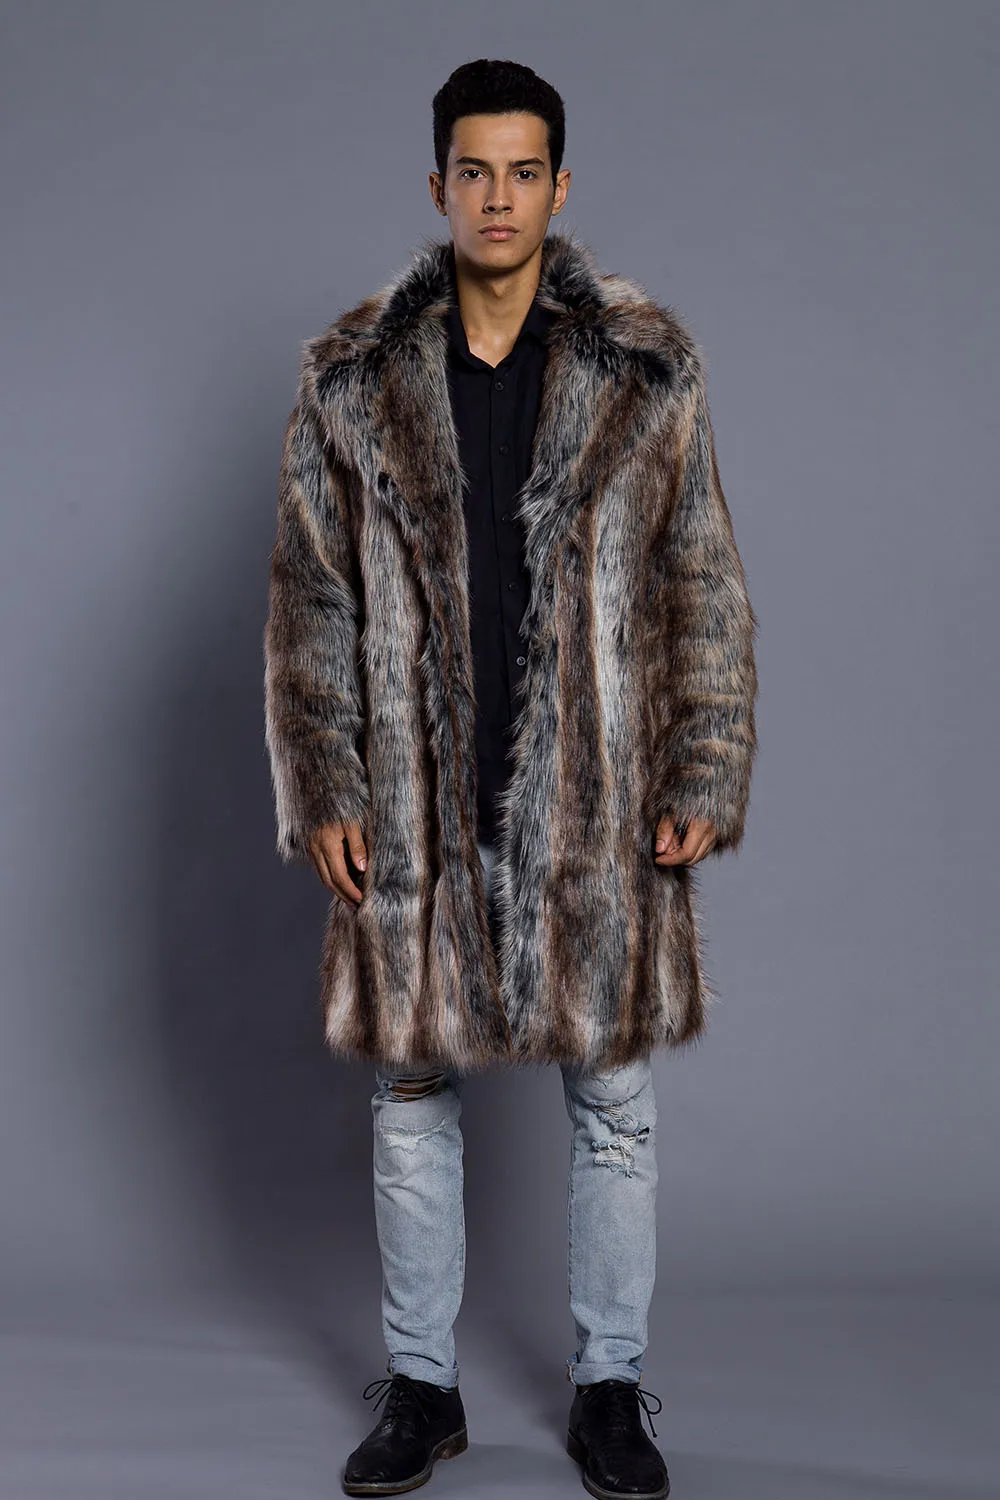 Мужское меховое пальто, зимняя верхняя одежда из искусственного меха норки, пальто Campera Cuero Hombre Abrigo, мужские куртки, chaqueta moto hombre, верхняя одежда